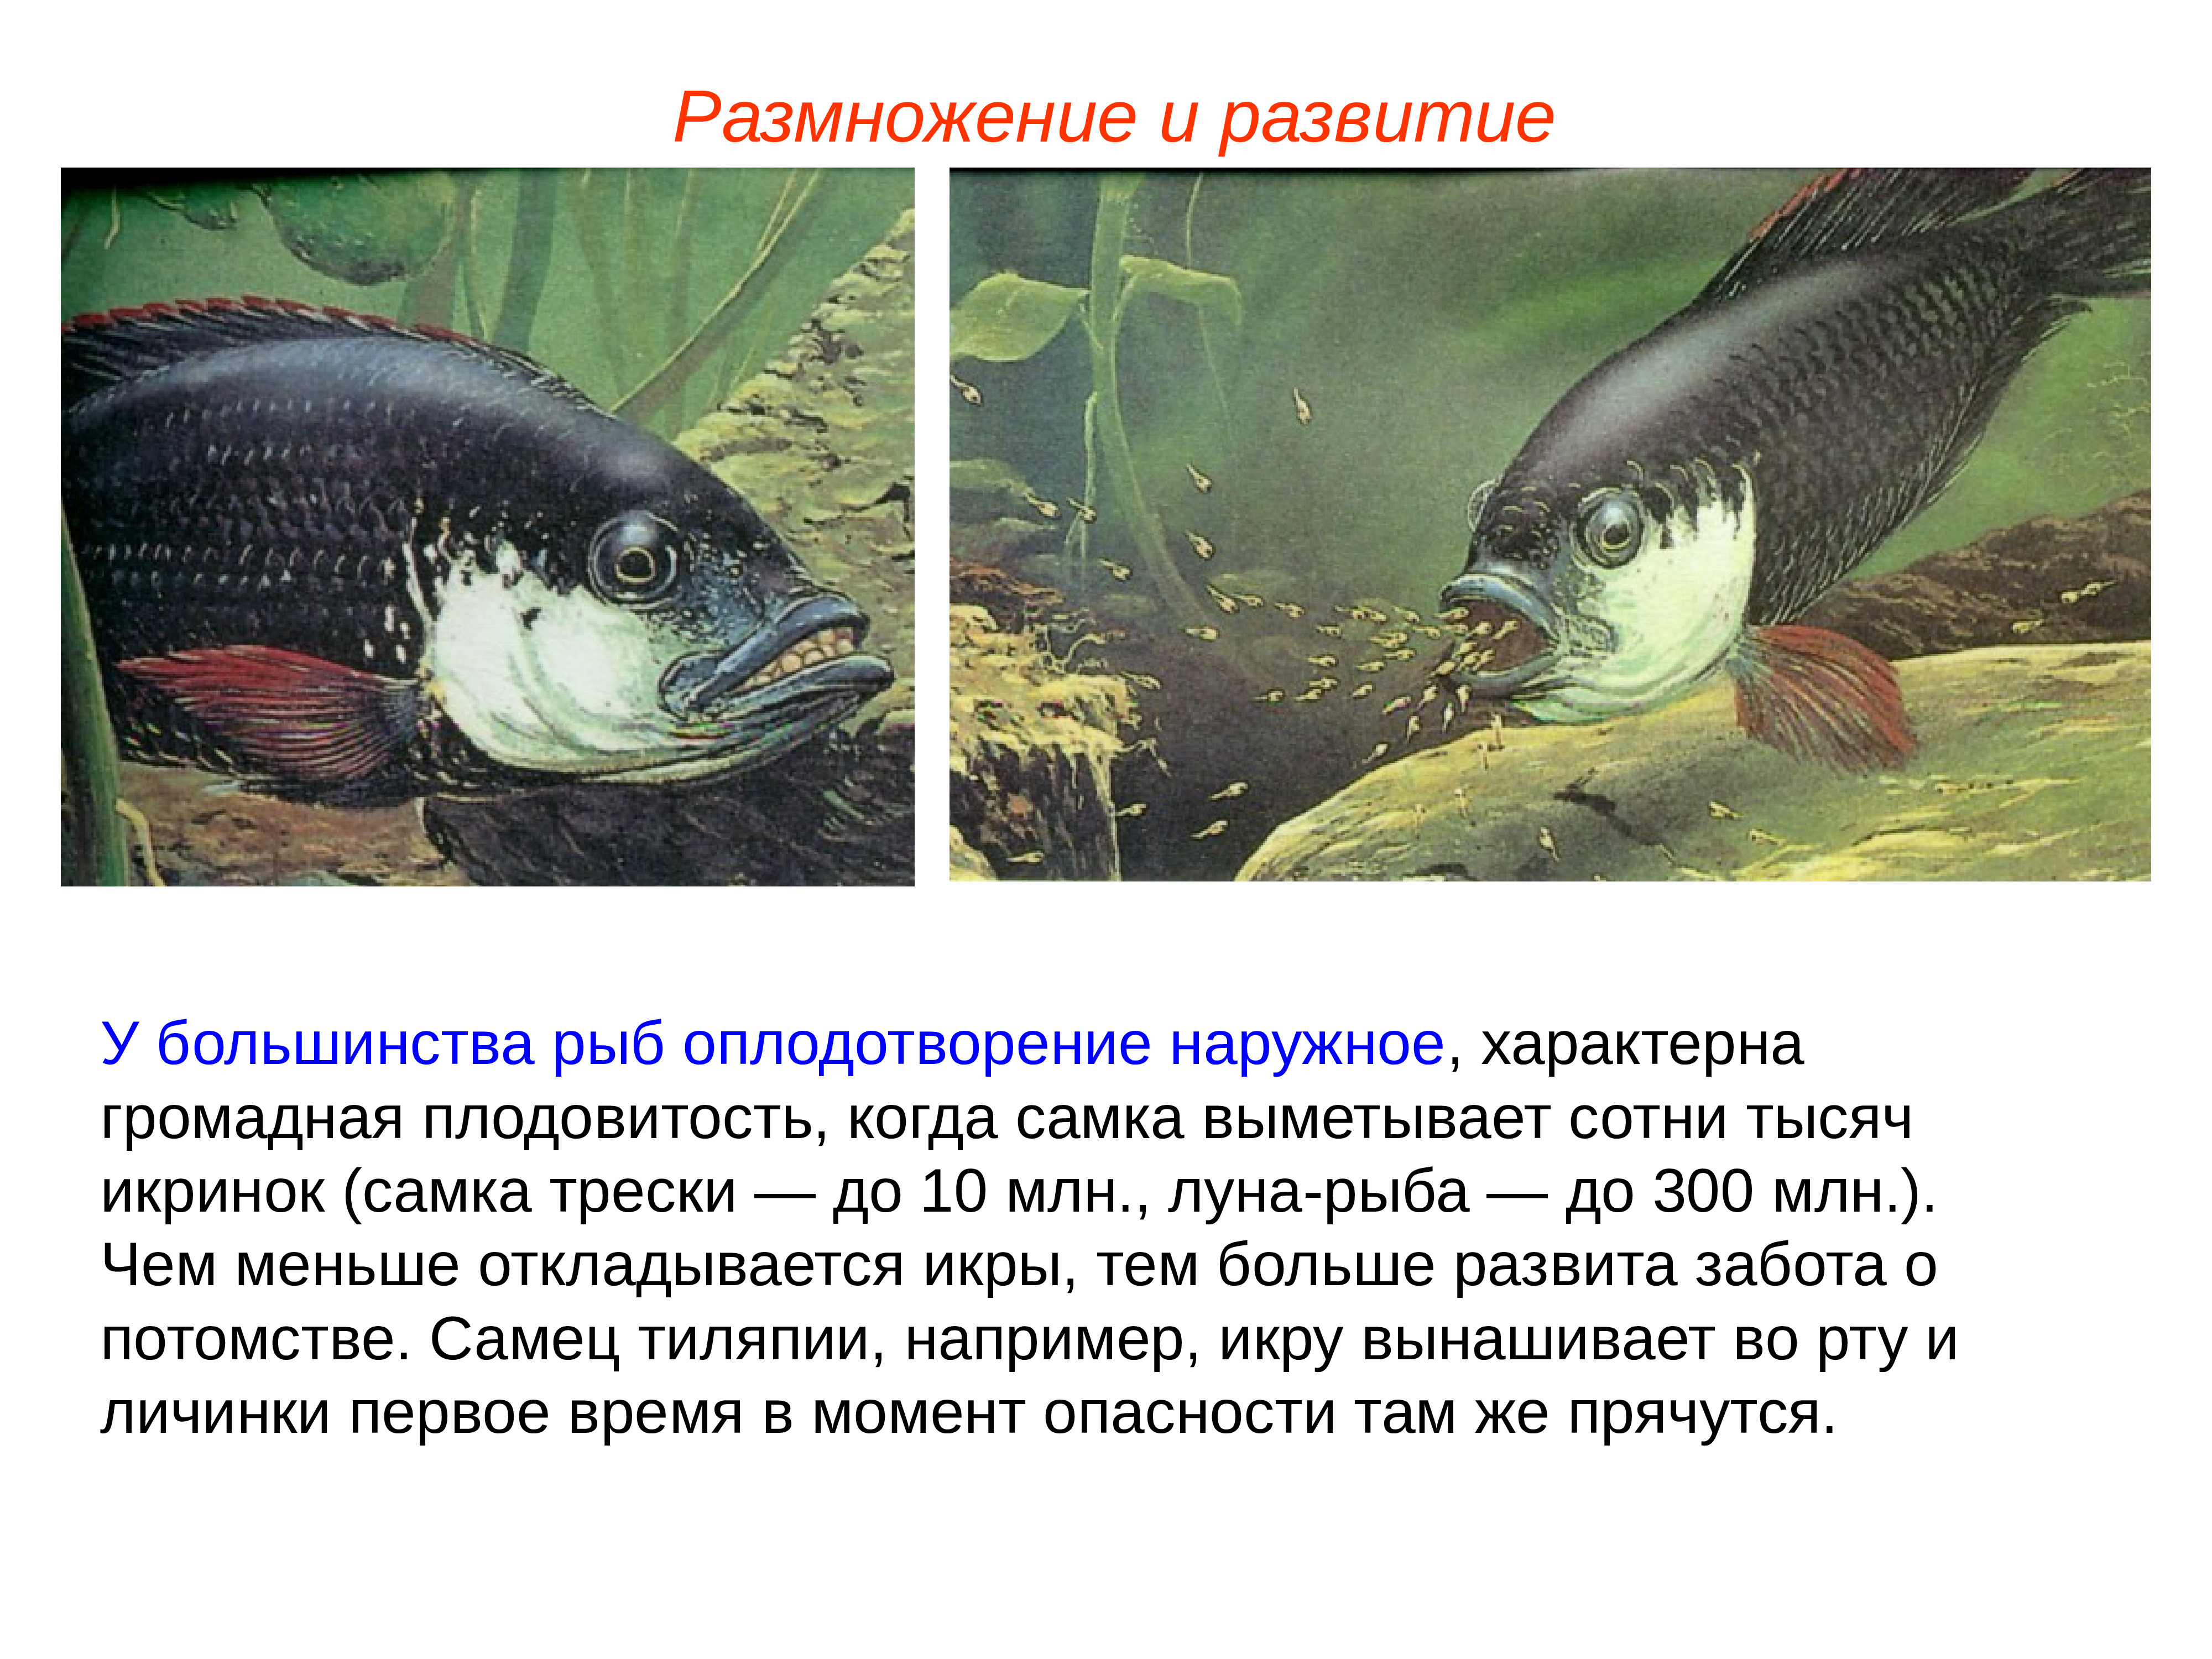 Внутреннее оплодотворение у хрящевых. Наружное осеменение рыб. Оплодотворение у большинства рыб. Наружное оплодотворение у рыб. Размножение и развитие рыб.